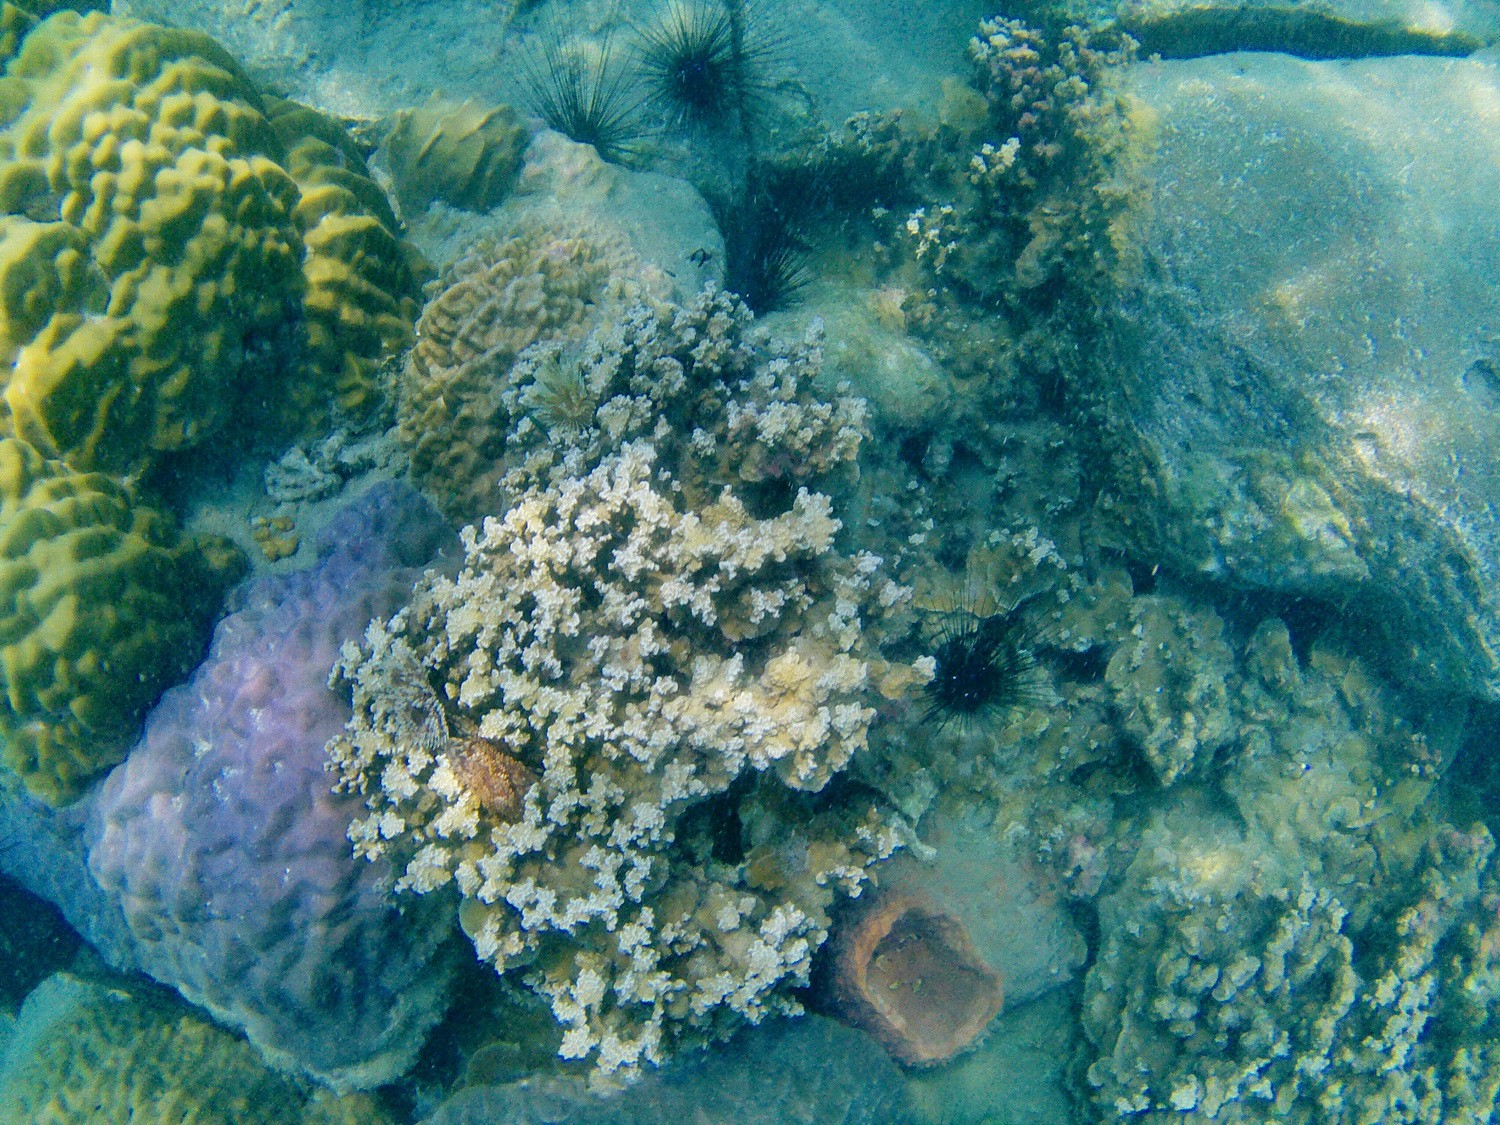 Colorful corals